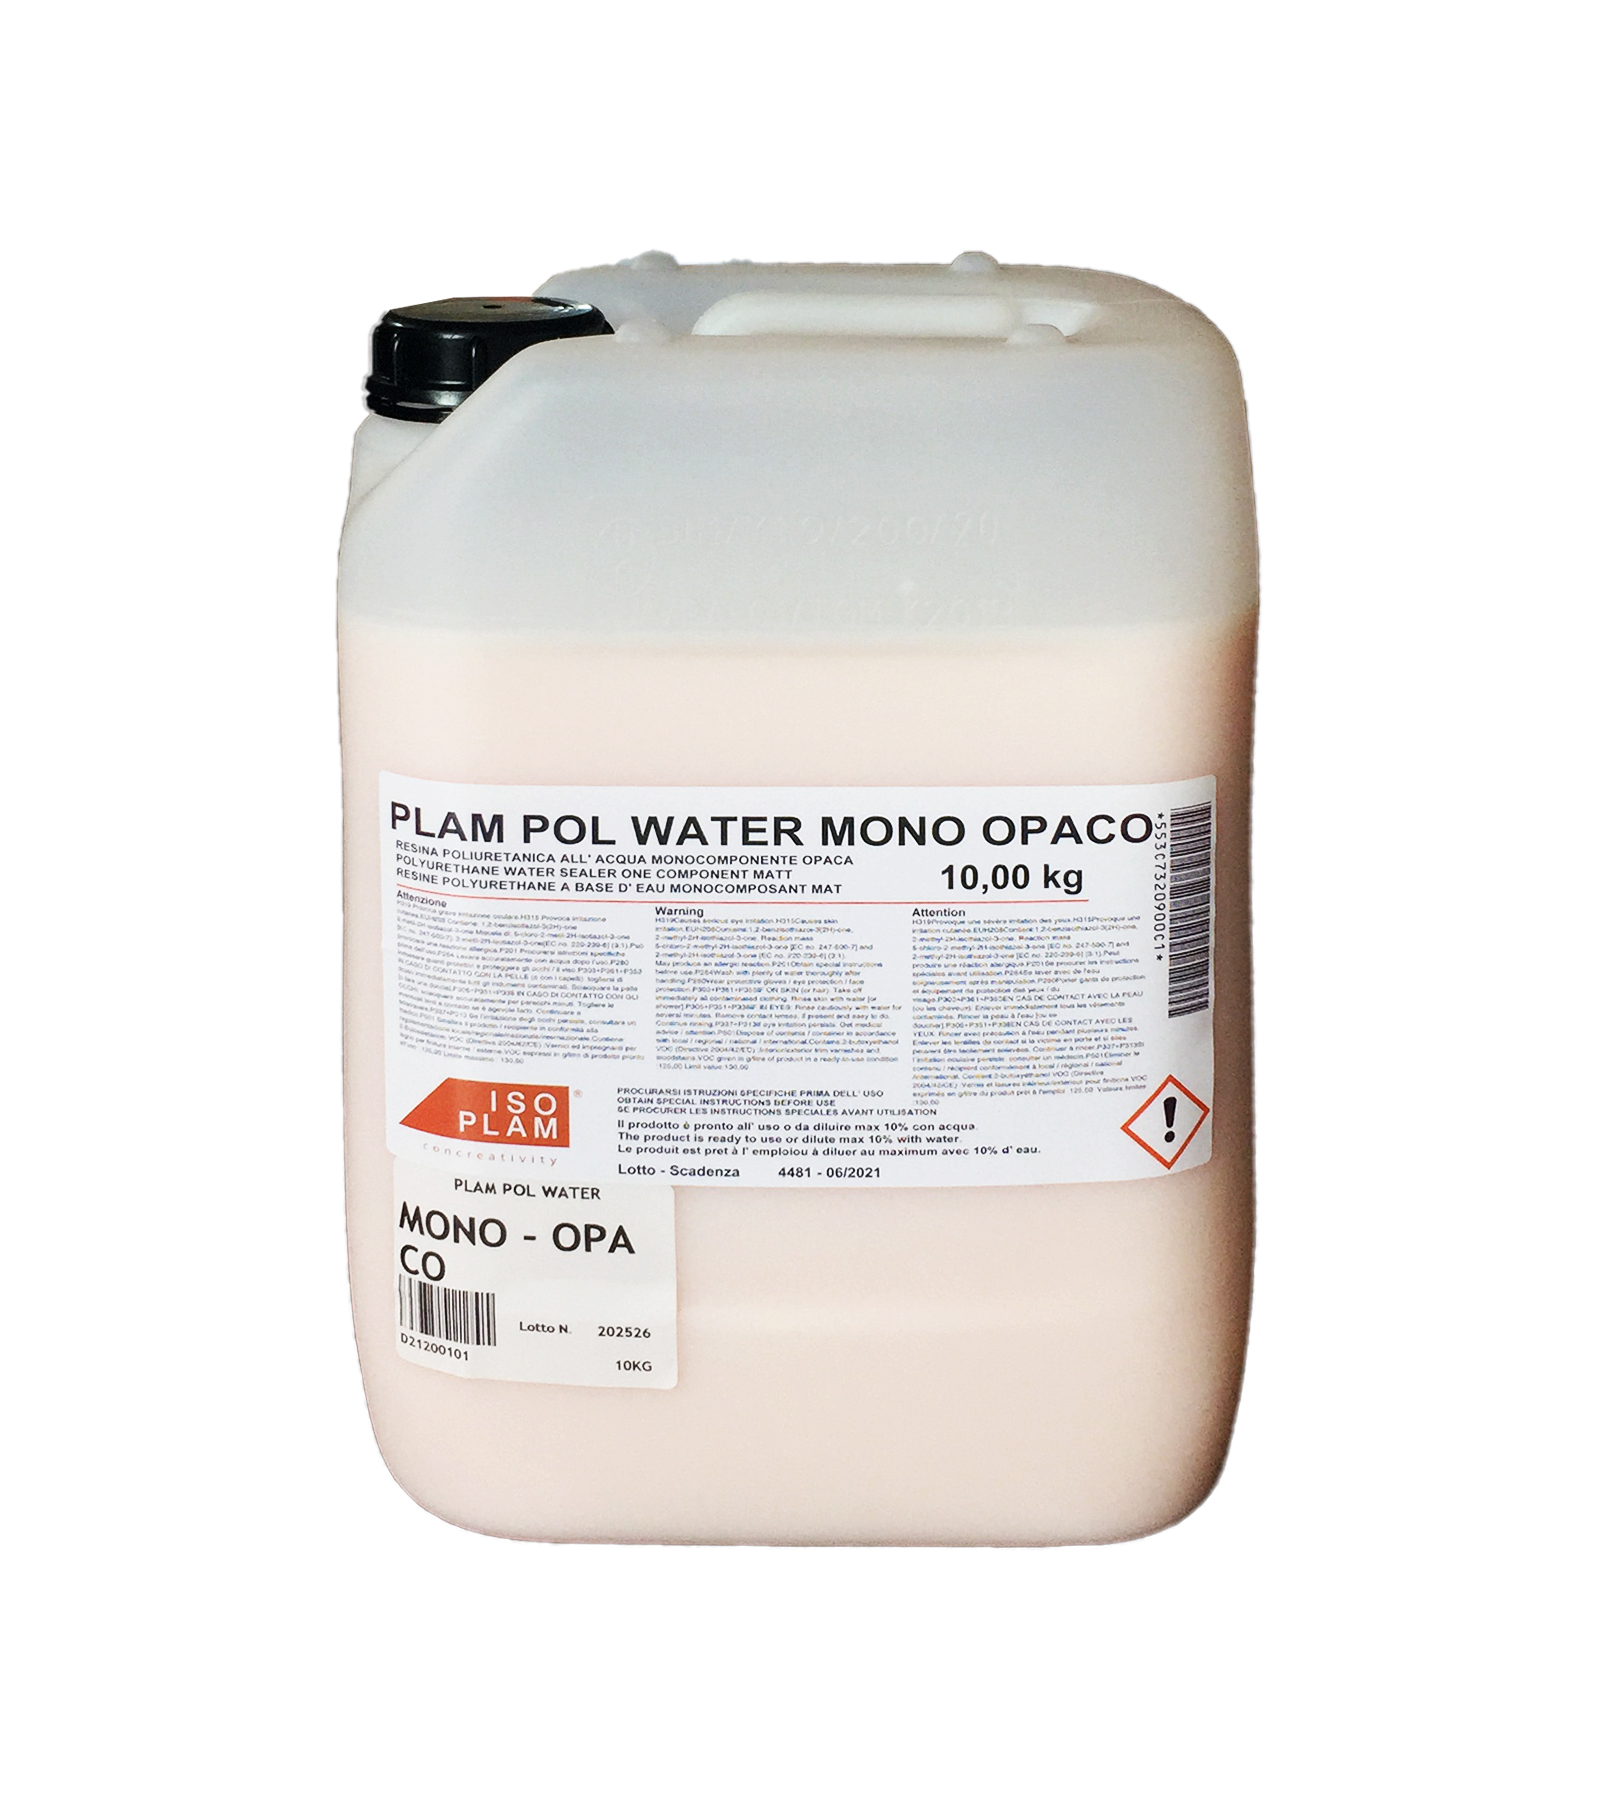 Plam Pol Water Mono opaca: resina protettiva idrorepellente